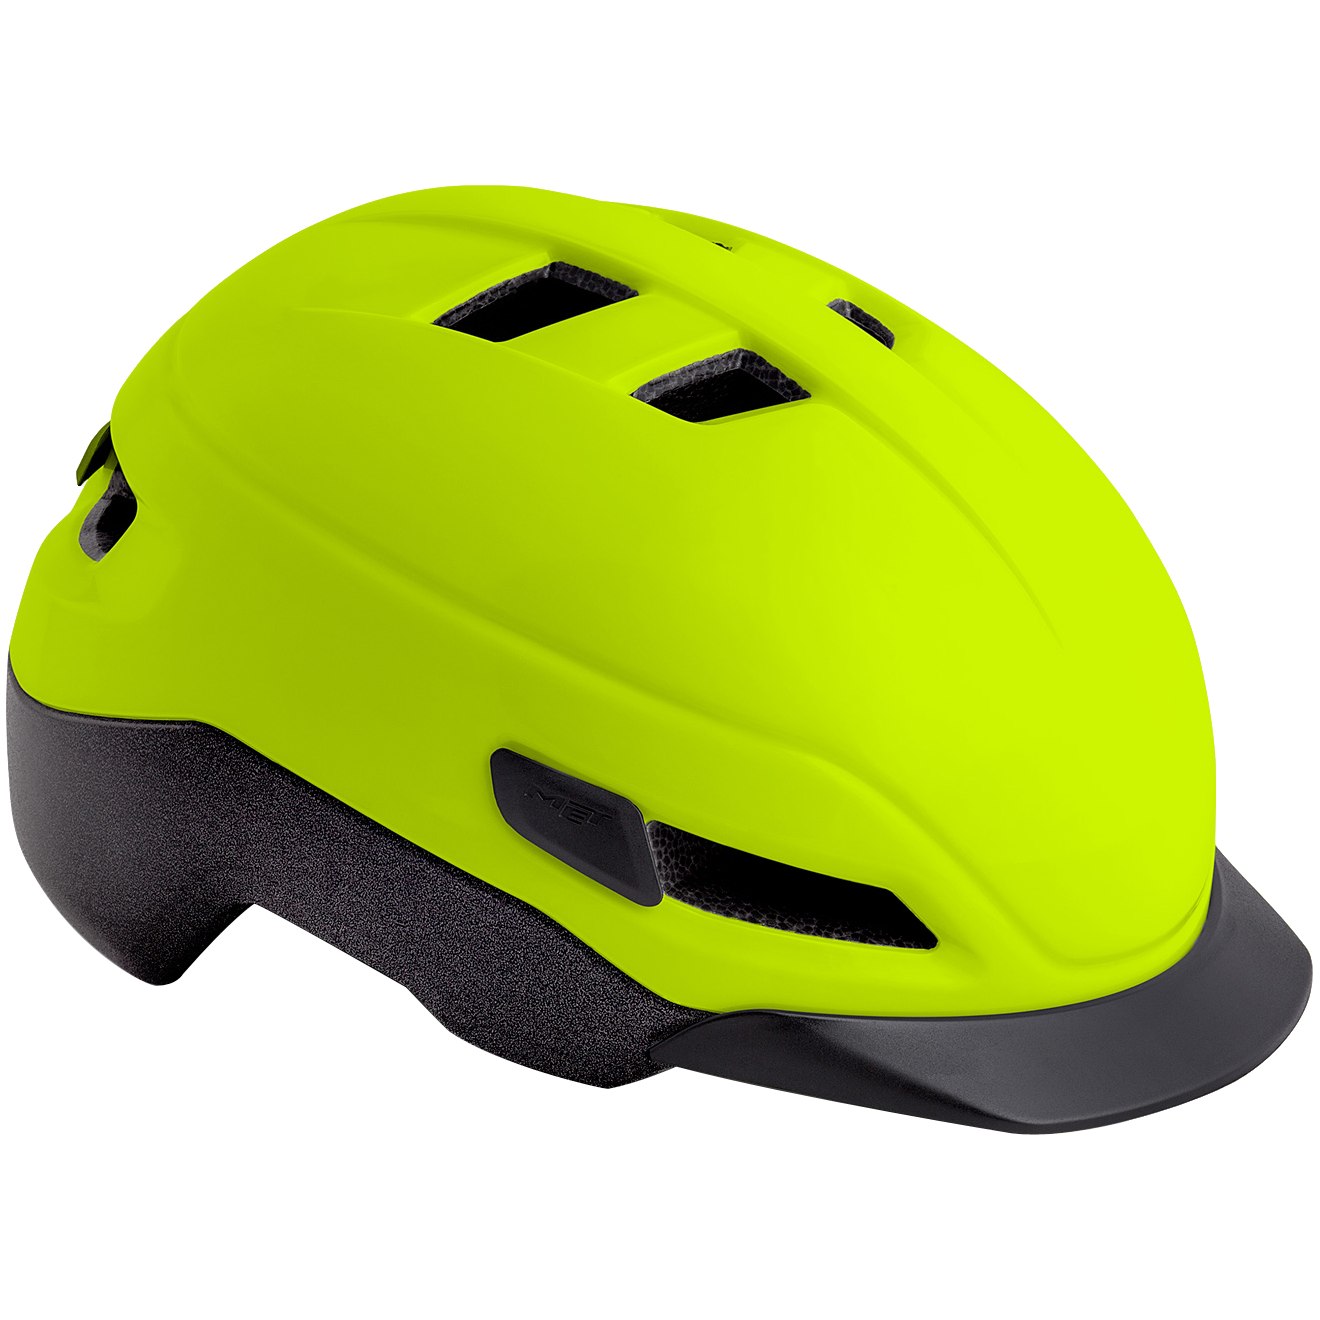 Produktbild von MET Grancorso Helm - Safety Yellow